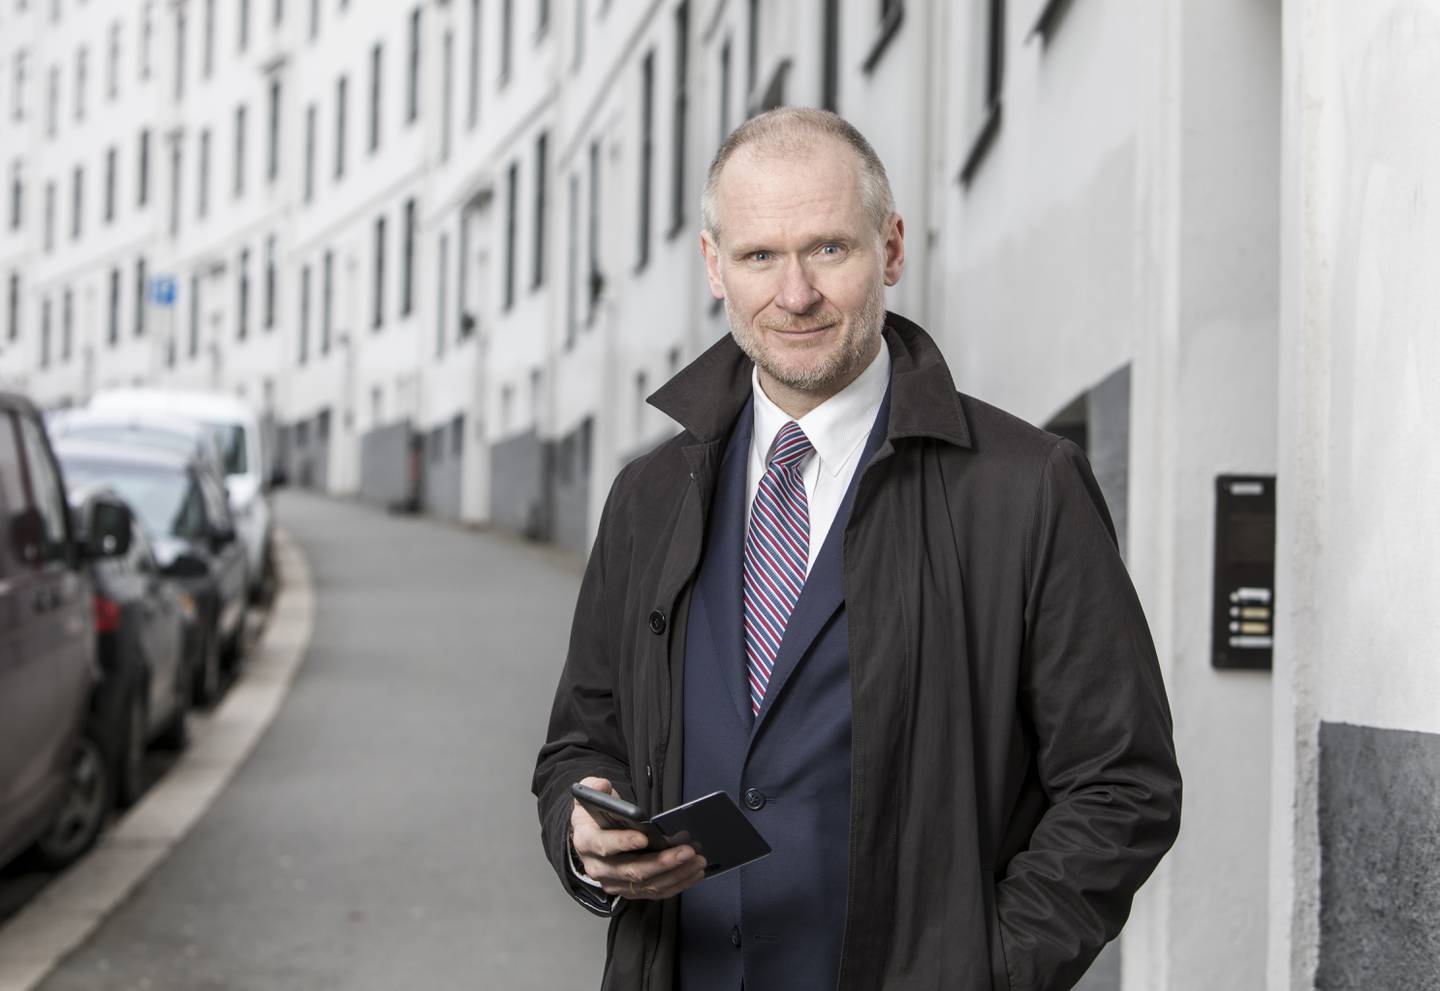 VENDEPUNKT: Administrerende direktør i Eiendom Norge, Henning Lauridsen, tror prisene vil begynne å gå nedover når vi passerer august. Foto: Ole Berg-Rusten / NTB